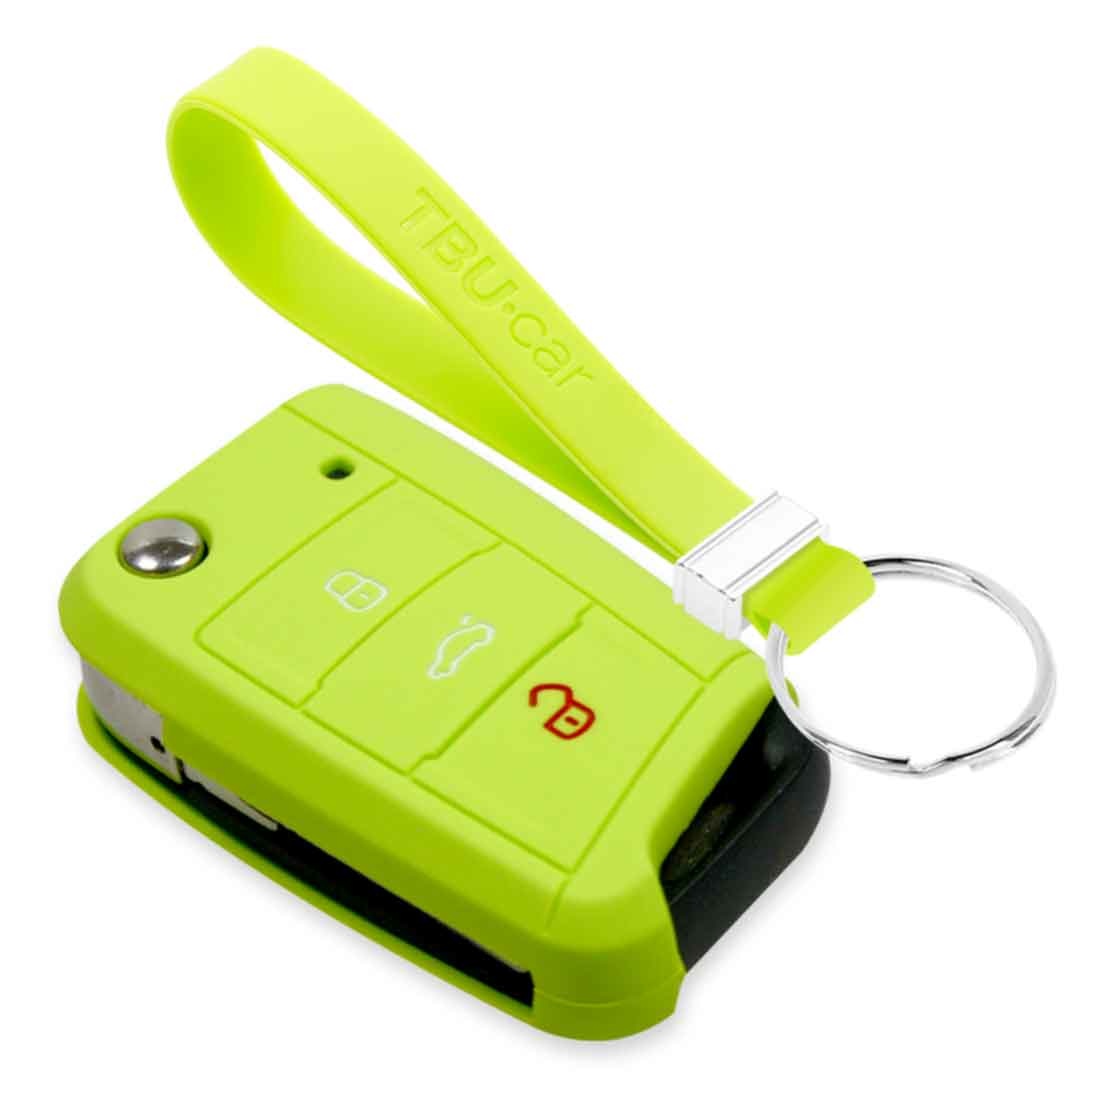 Premium Schlüsselhülle / Schlüsselcover für Volkswagen, Skoda